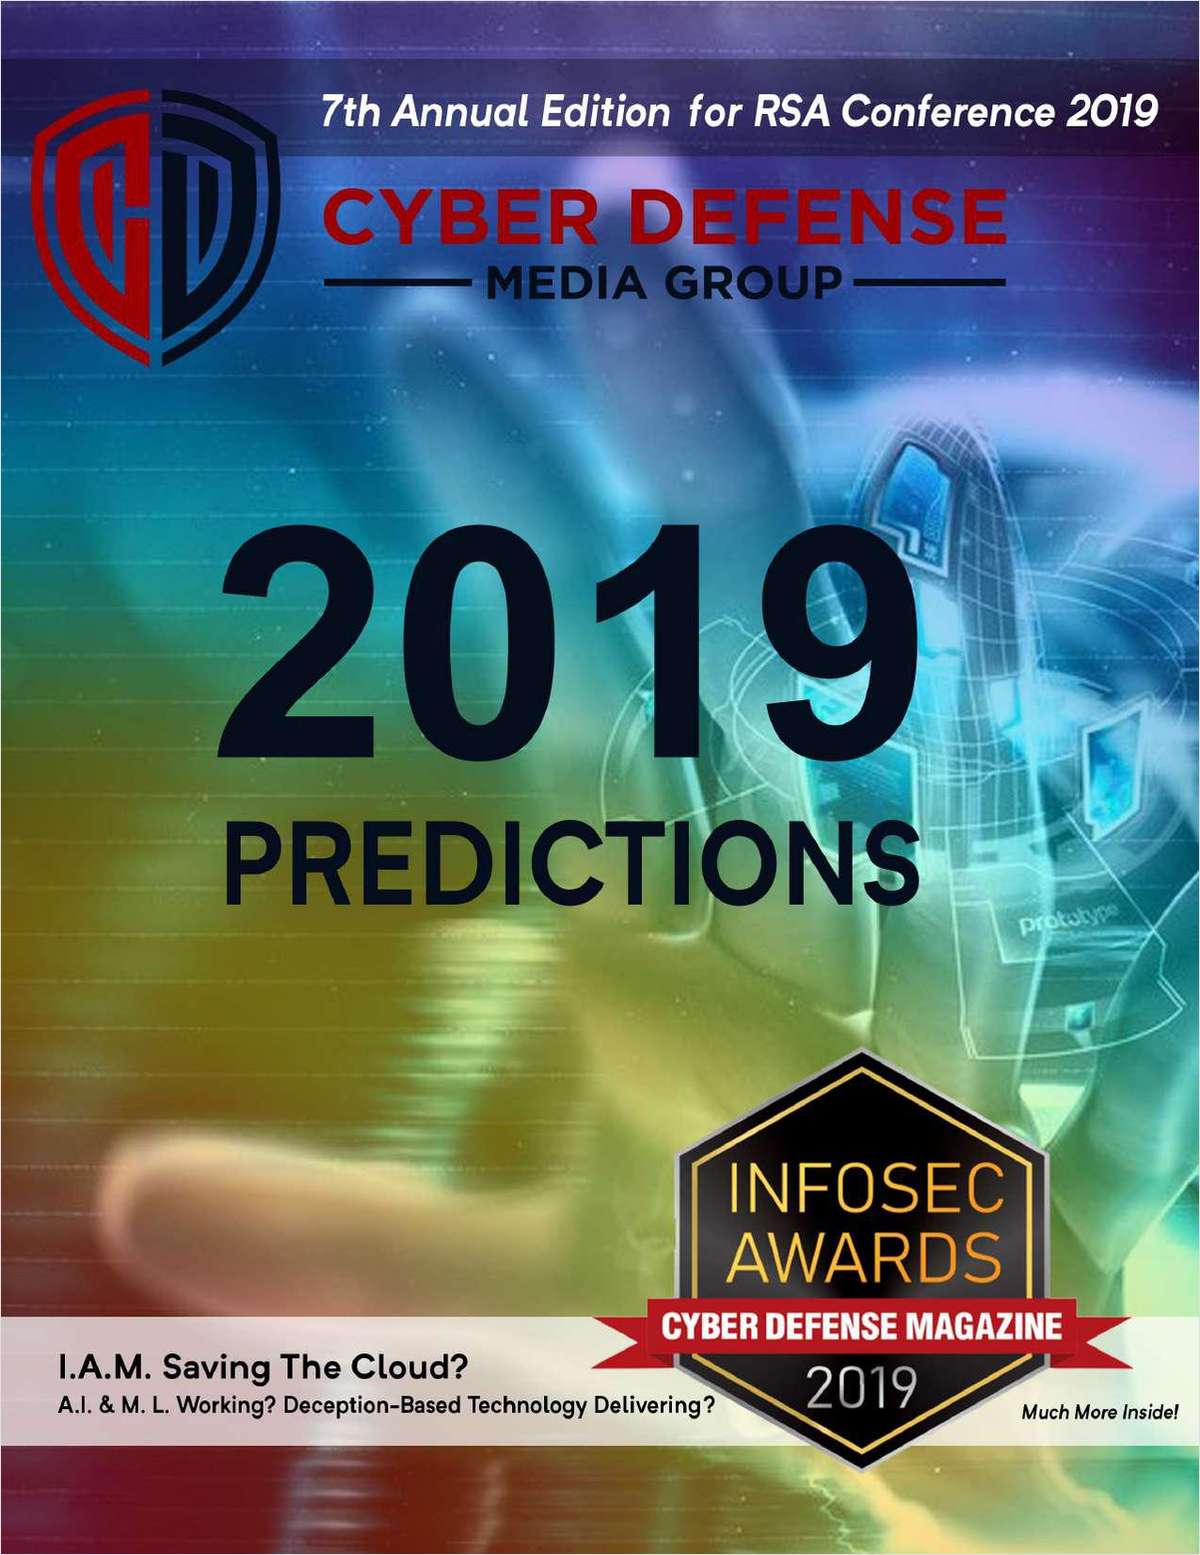 Cyber Defense Magazine - RSA Conference - Annual Edition 2019